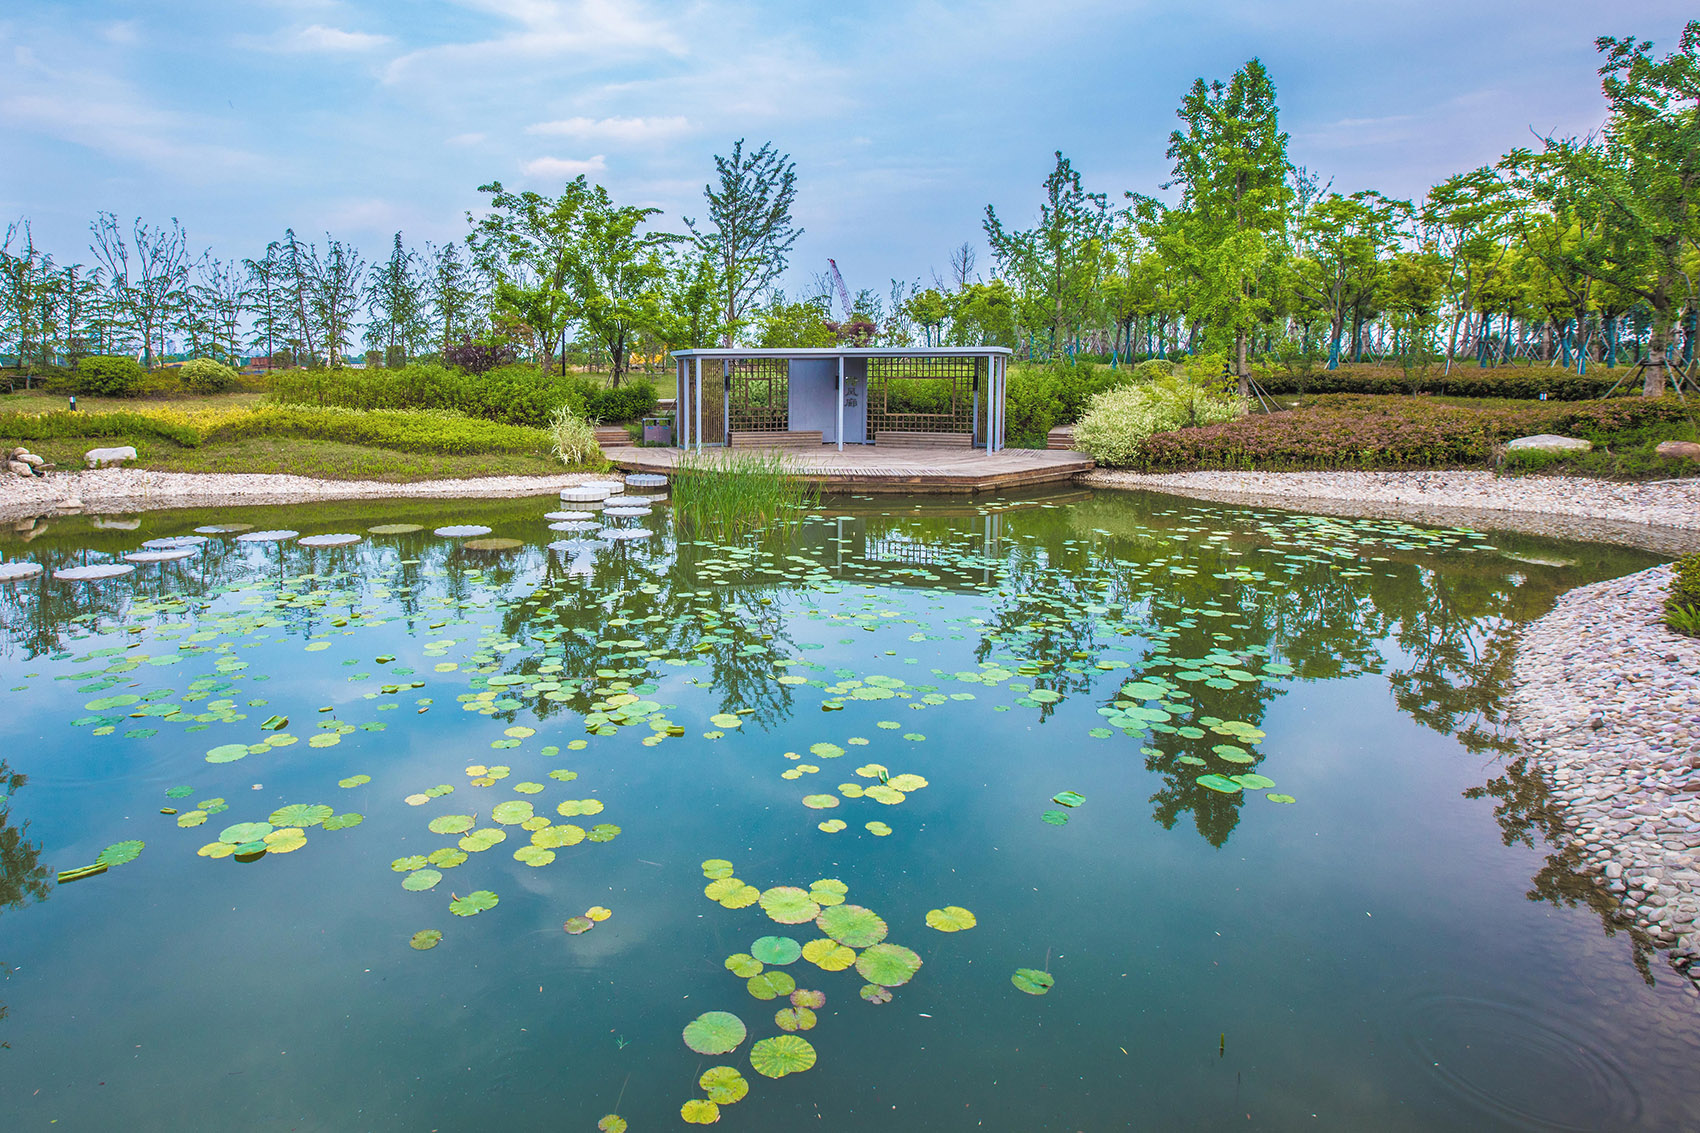 扬州的伟大复兴 &  廖家沟城市中央公园，扬州/迈向繁荣生态的后瘦西湖时代-101